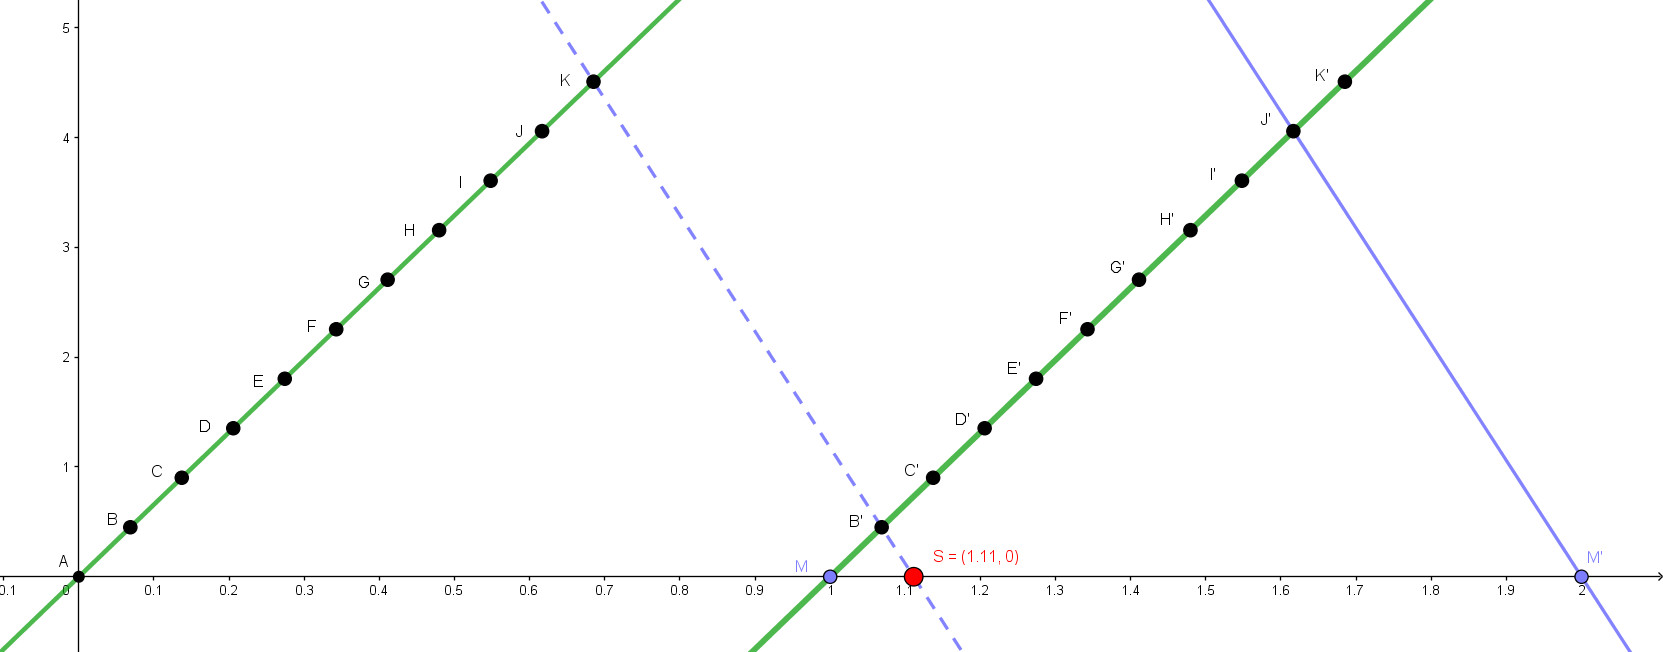 Representación alternativa del número racional 10/9 utilizando el teorema de Thales.